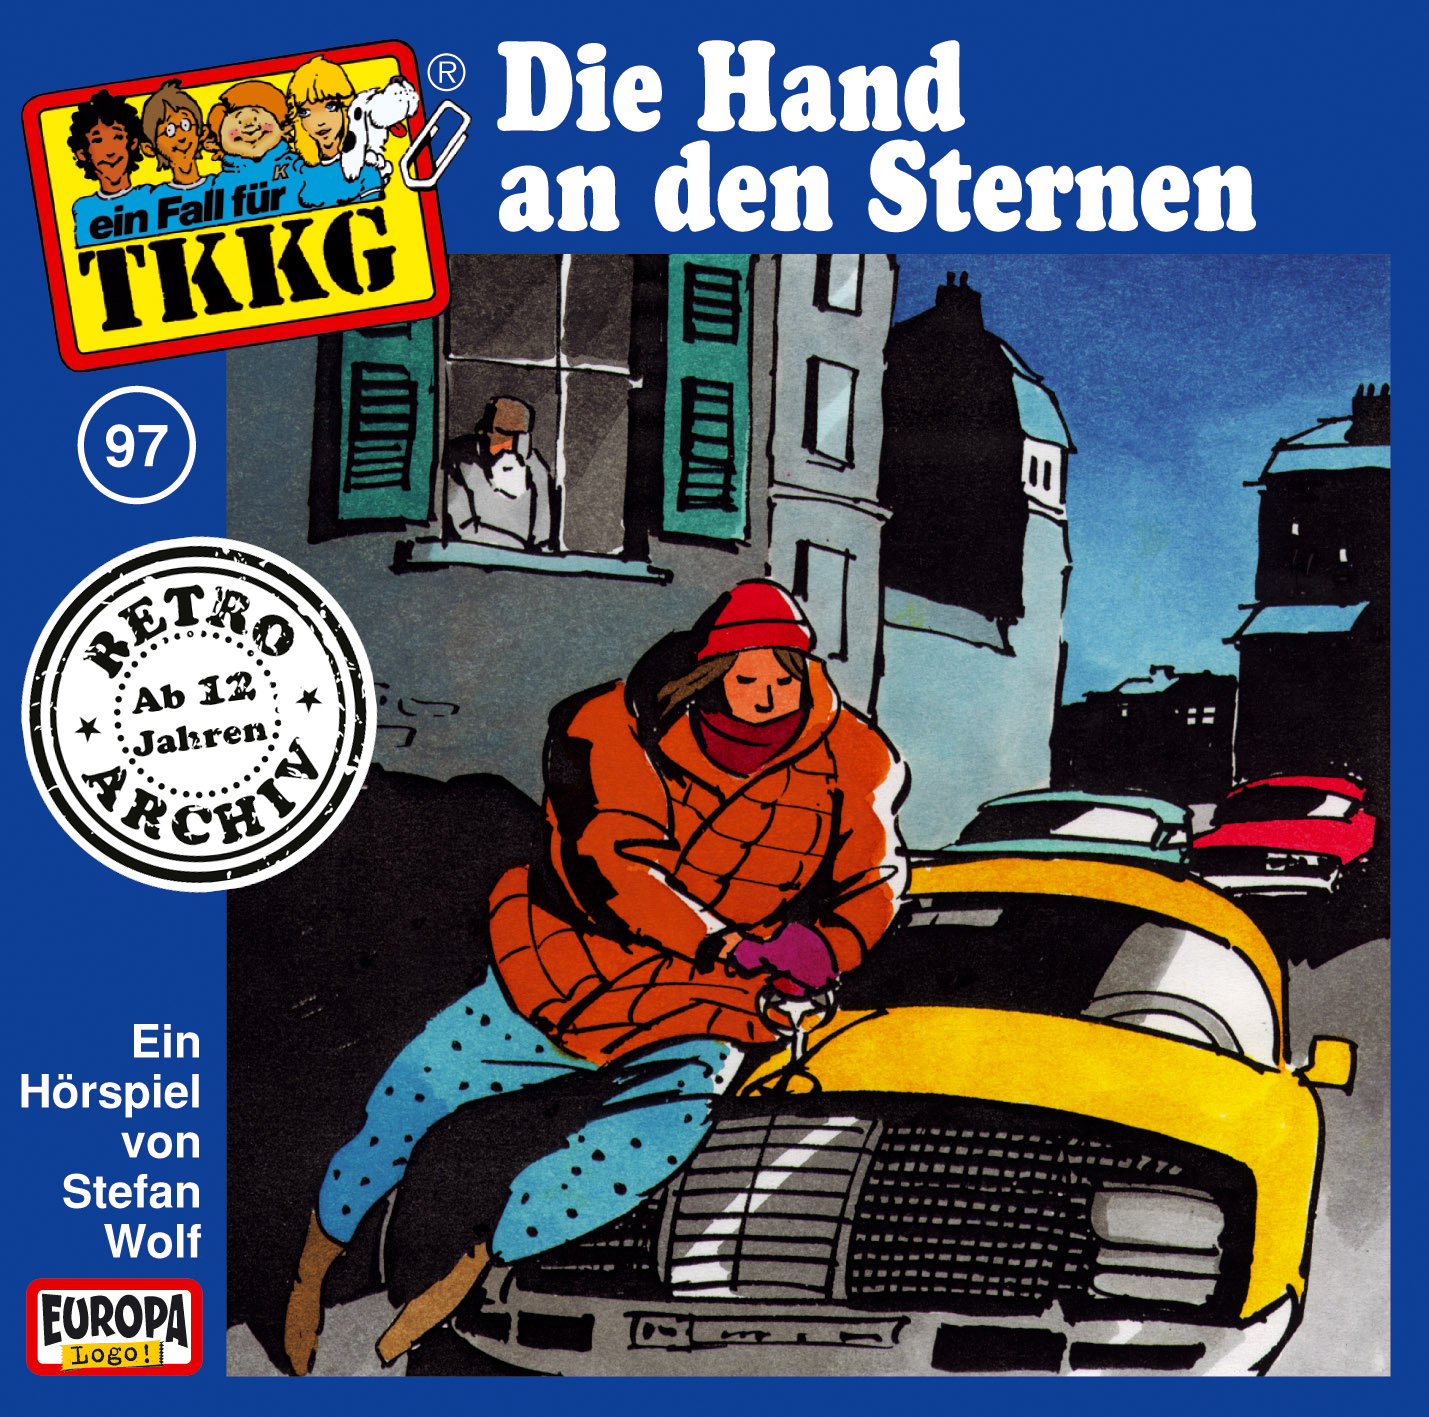 TKKG Retro-Archiv - Die Hand an den Sternen